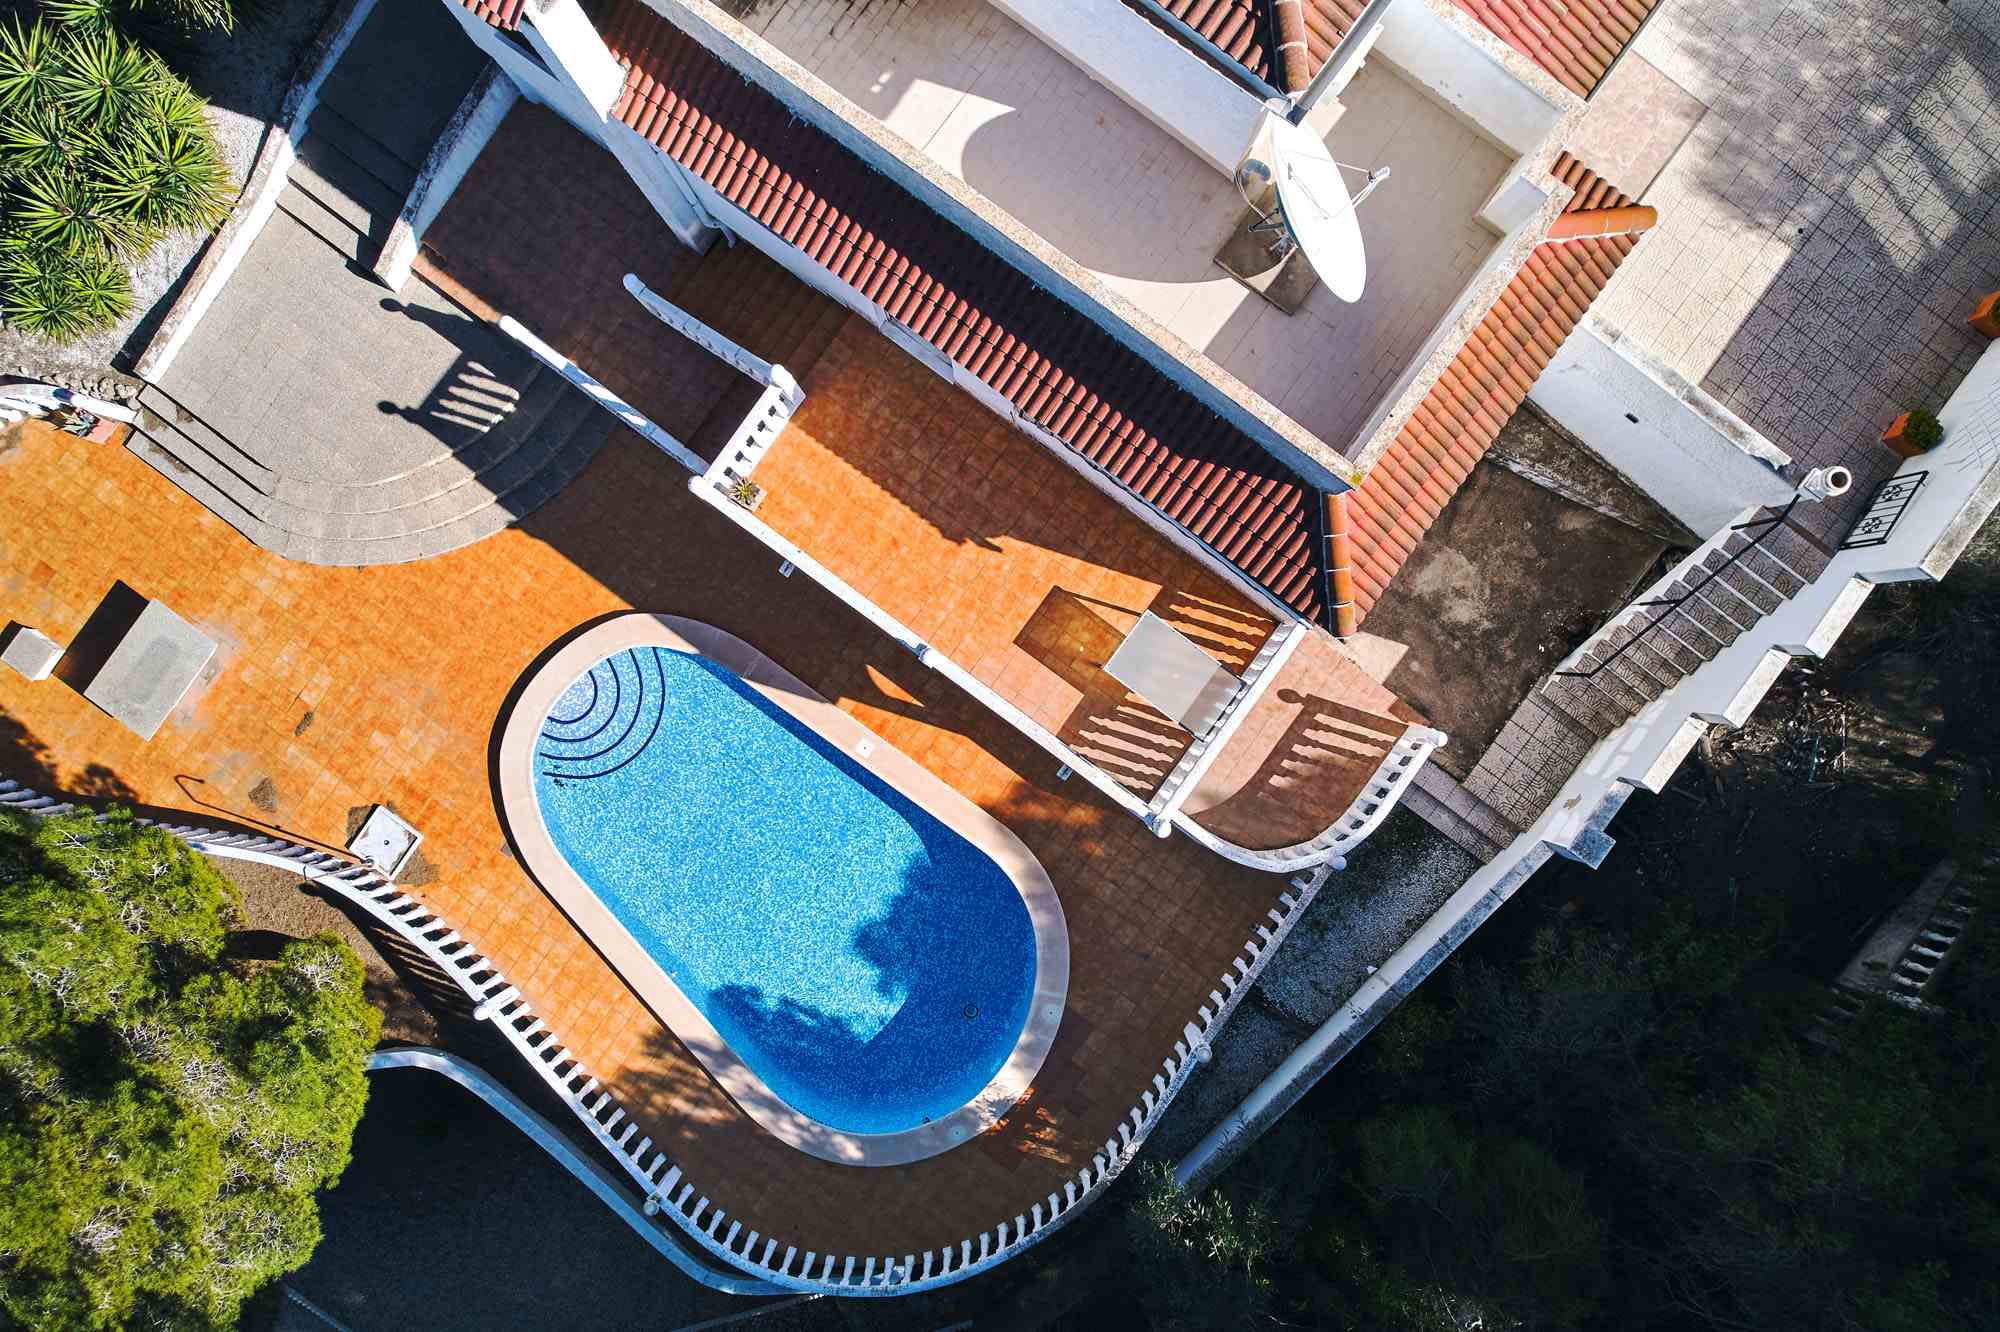 Villa for sale in Alicante 35